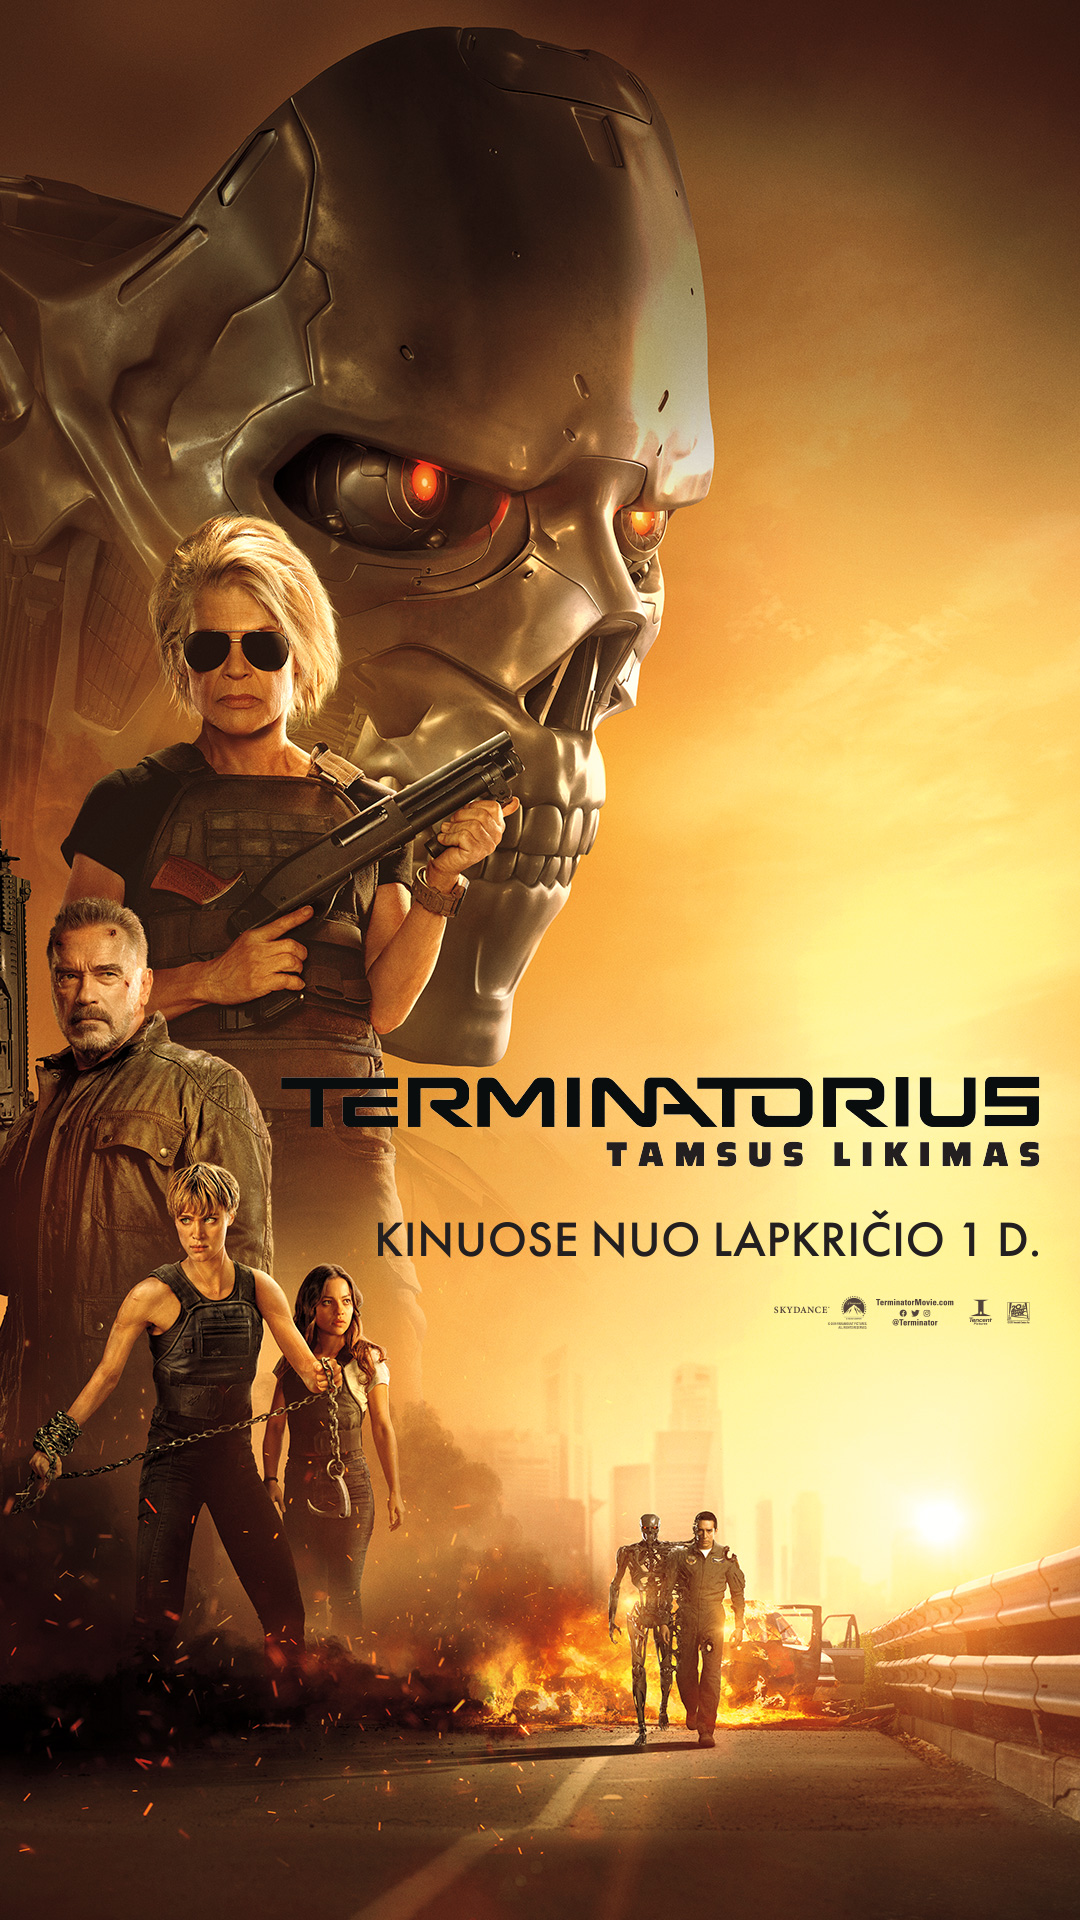 TERMINATORIUS. TAMSUS LIKIMAS (Terminator: Dark Fate)